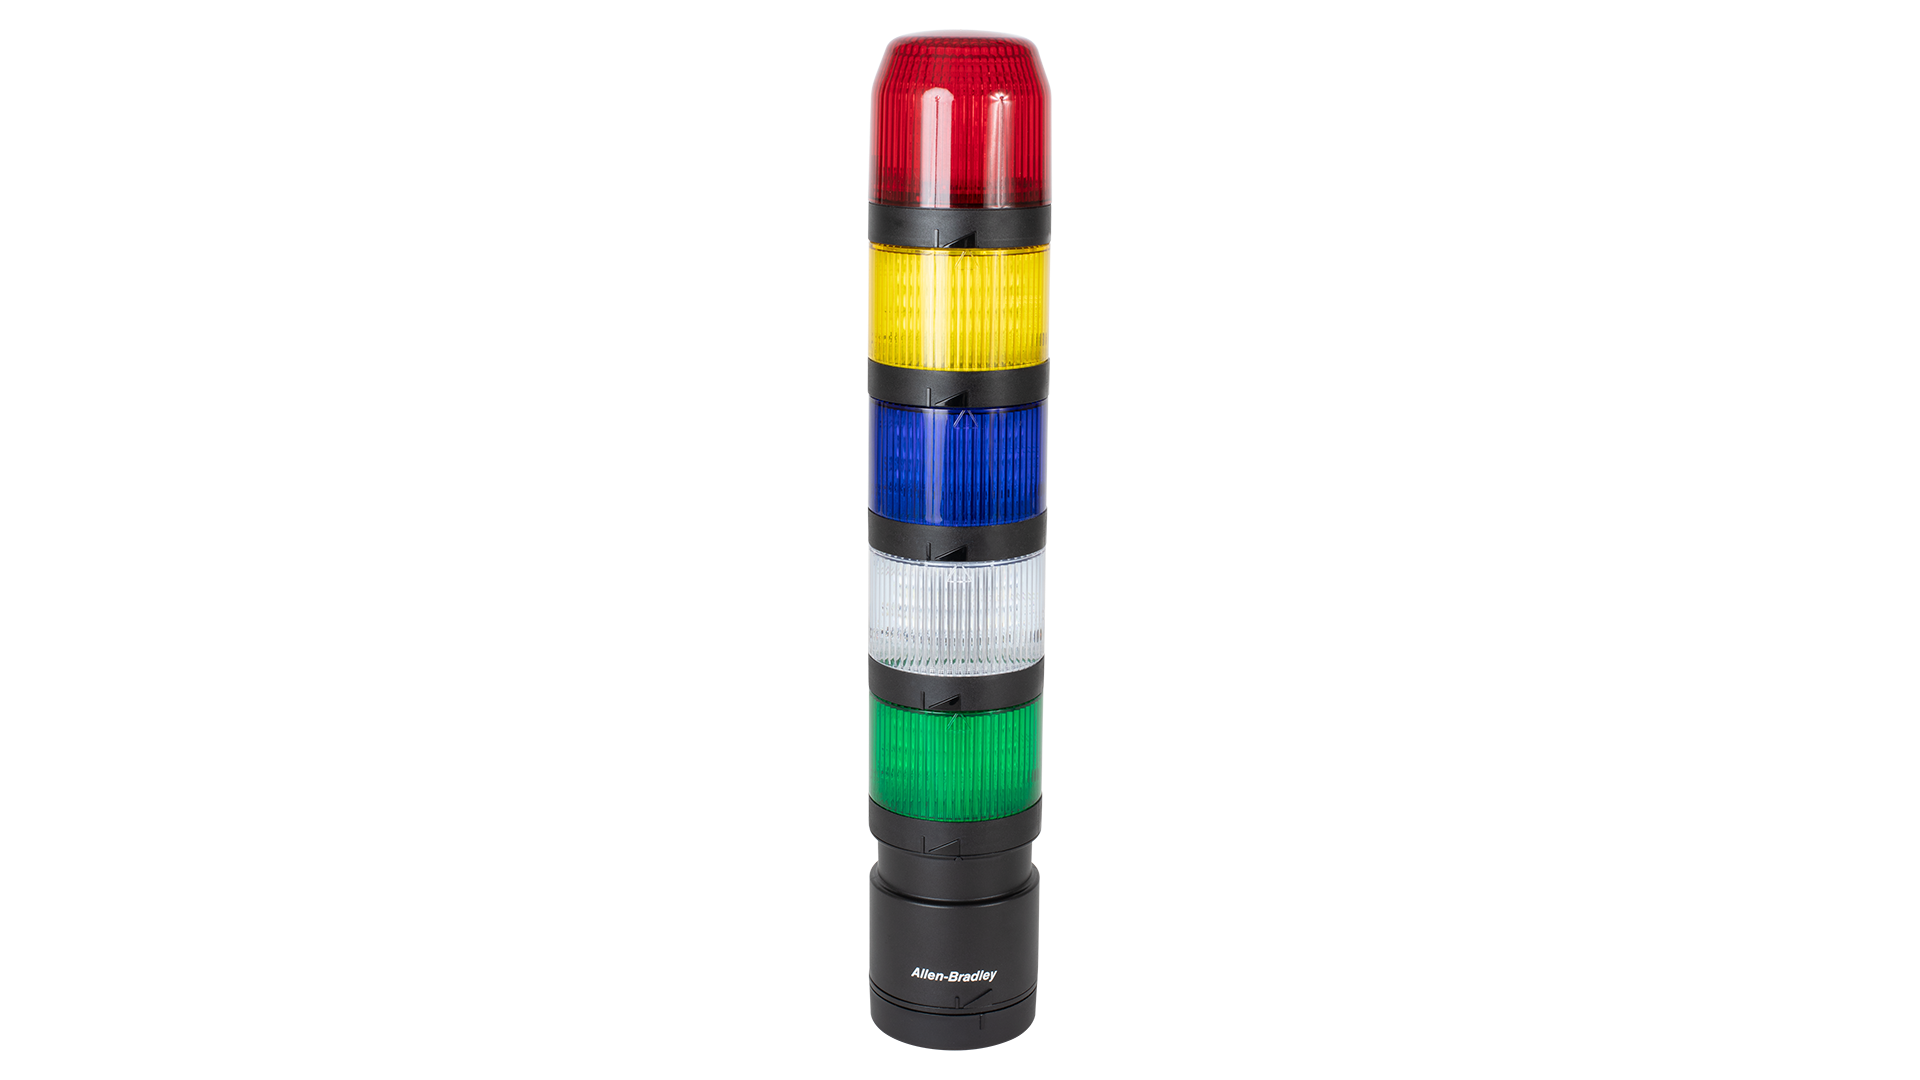 上から下へのIO-Linkスタックライト - 黒のトランスデューサ型サウンドモジュール、赤、アンバー、緑の点灯していないライトモジュール、黒の垂直取付け基底